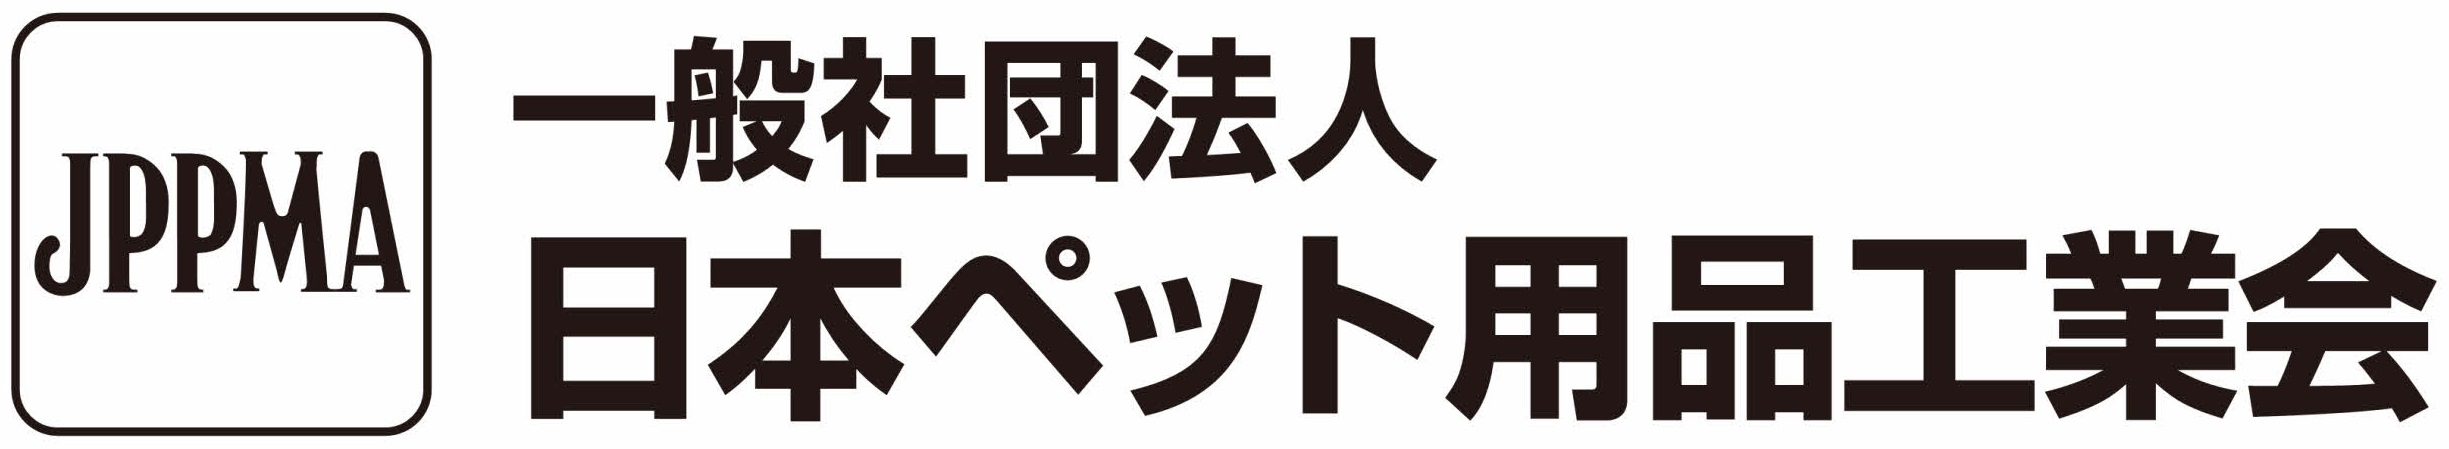 一般社団法人日本ペット用品工業会